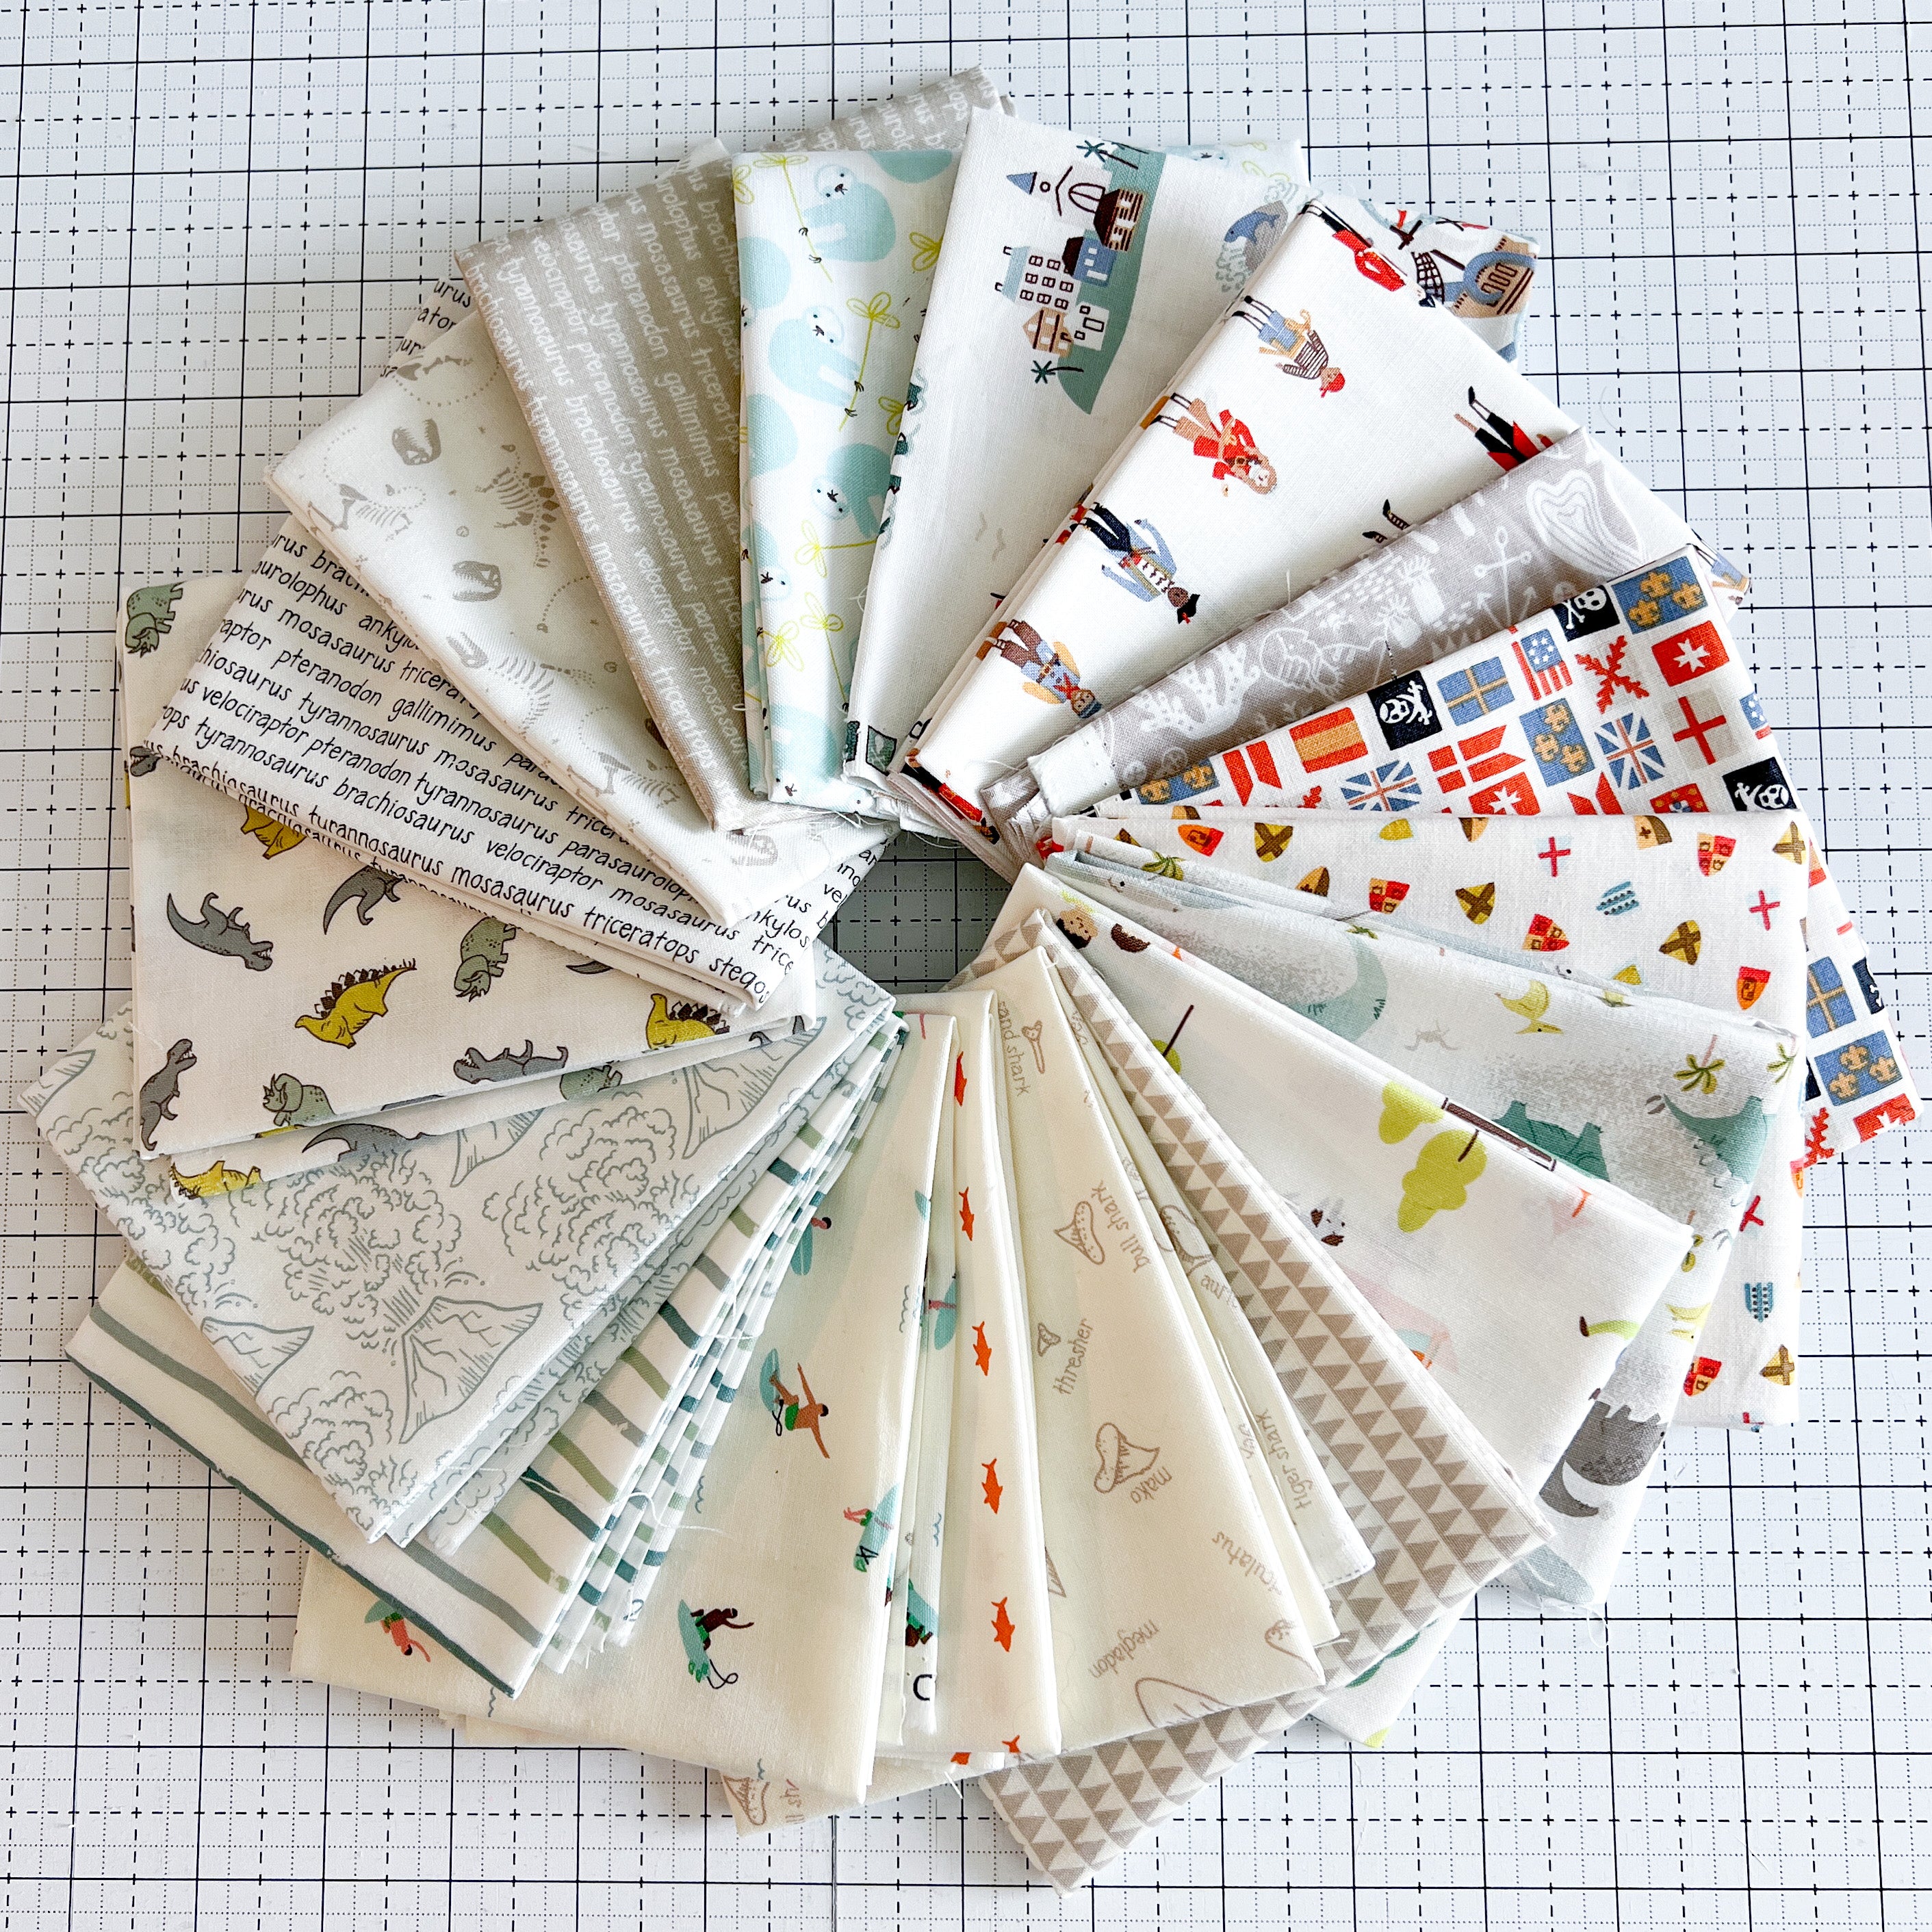 Roar Fabric Collection Fat Quarter Bundle by Citrus and Mint Designs